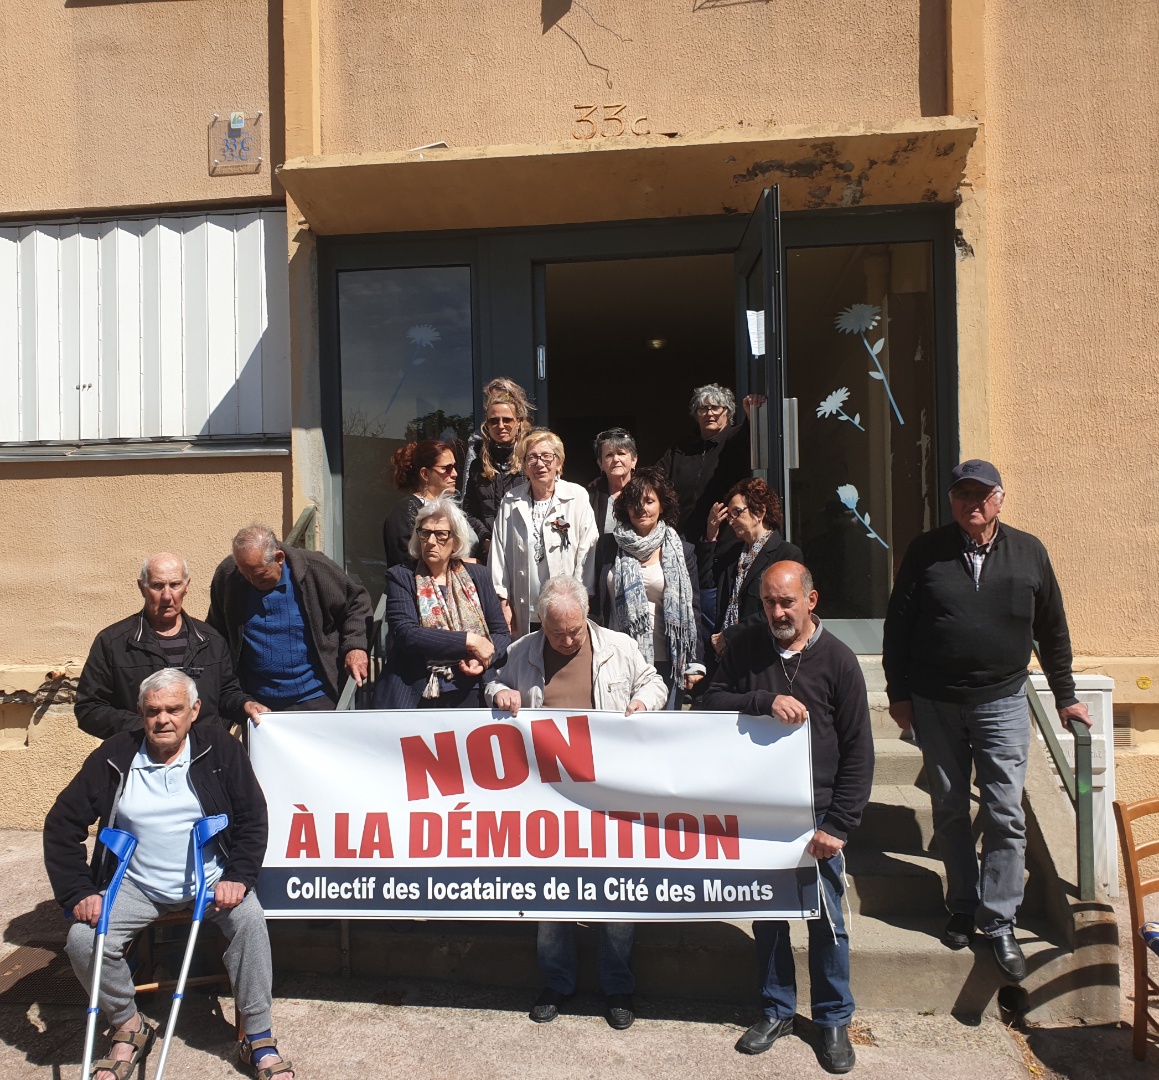 Le Collectif "en colère" des locataires de la Cité des Monts de Bastia toujours mobilisé